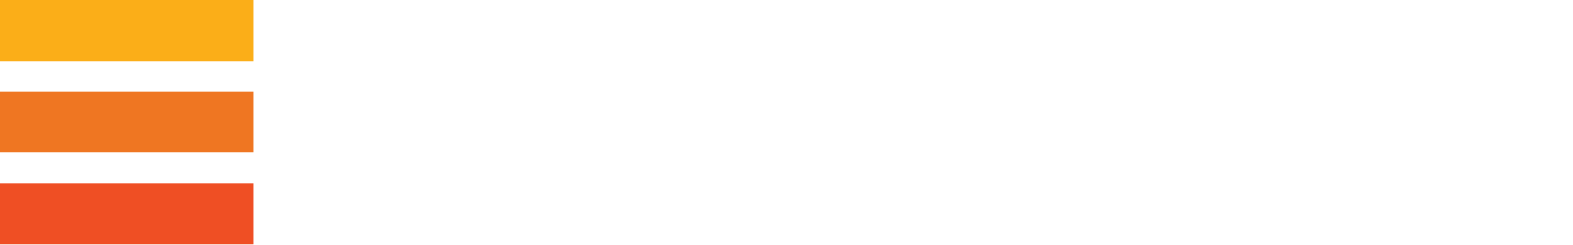 Evraz logo large for dark backgrounds (transparent PNG)